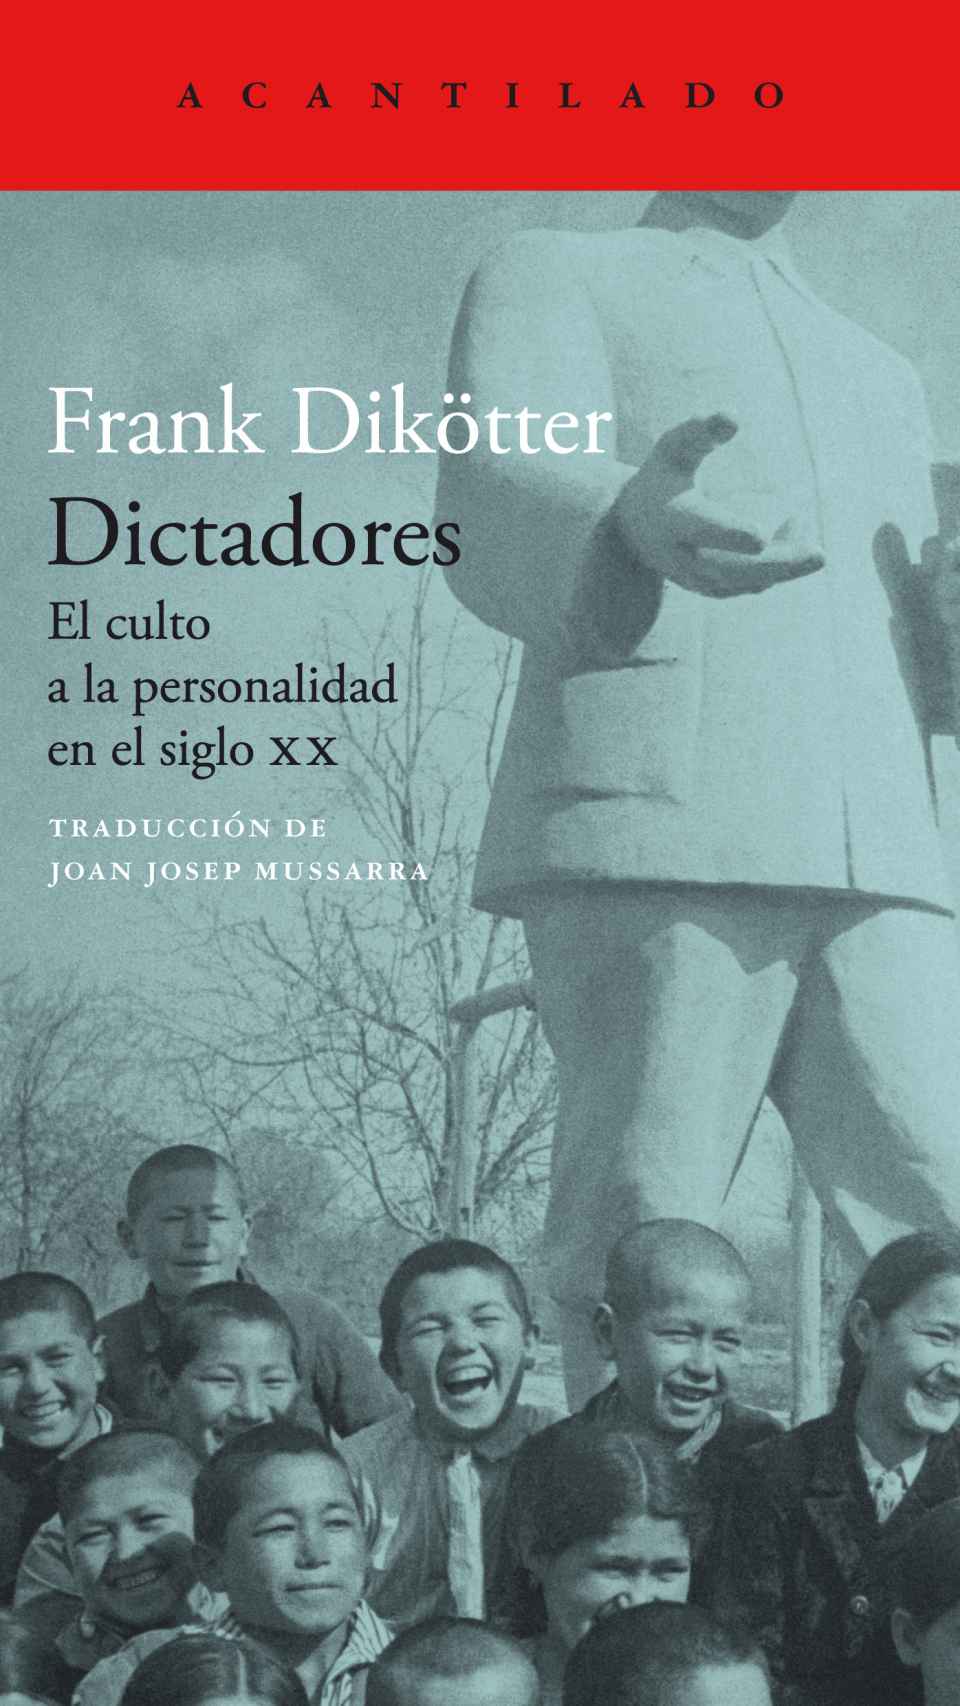 'Dictadores', el libro de Frank Dikötter